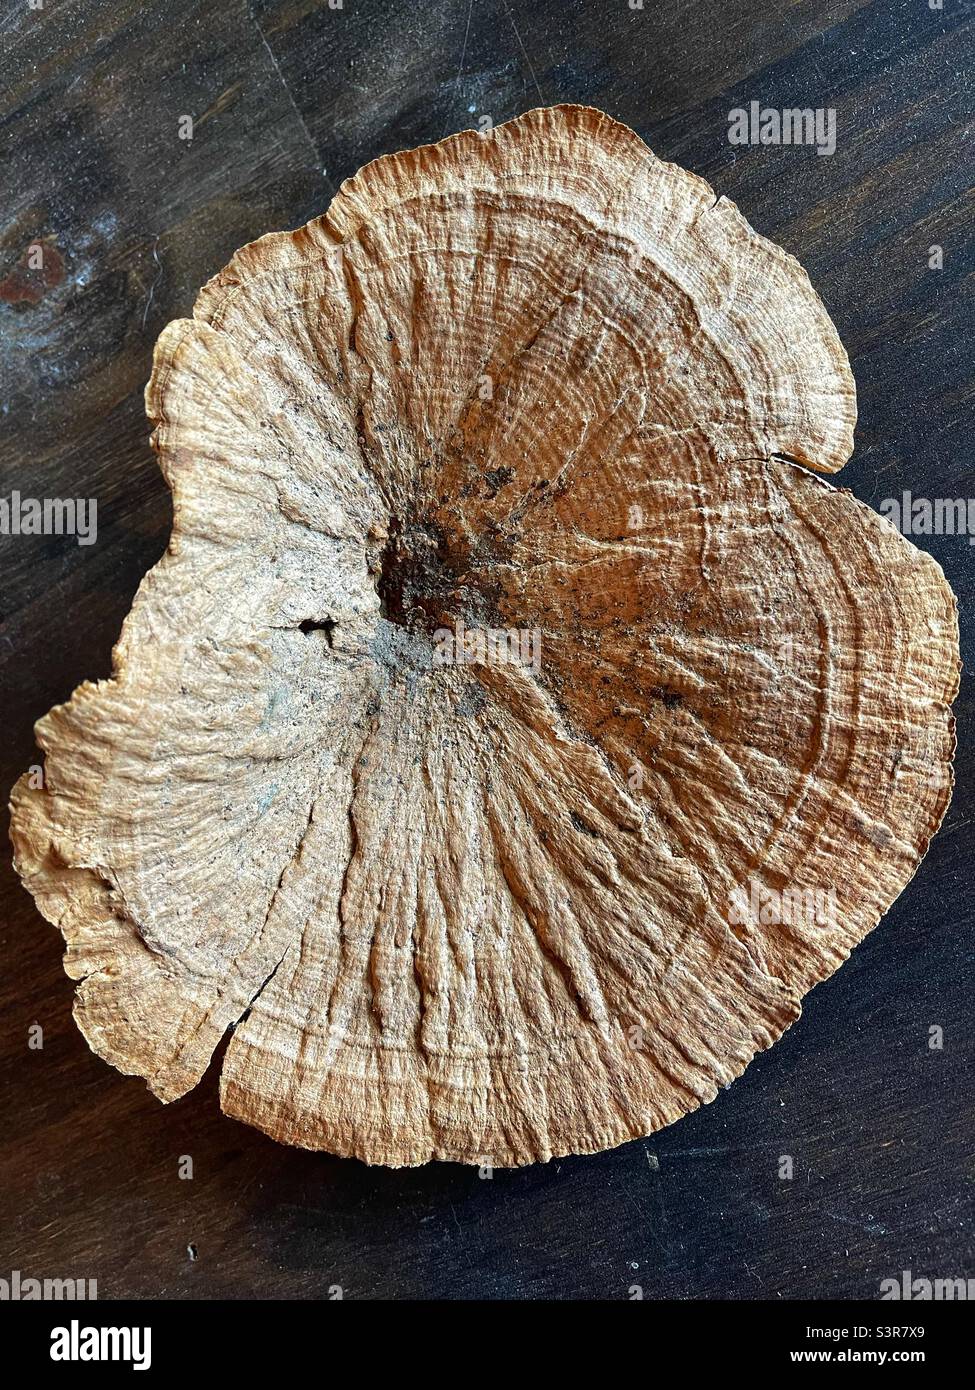 Flat round mushroom Stock Photo